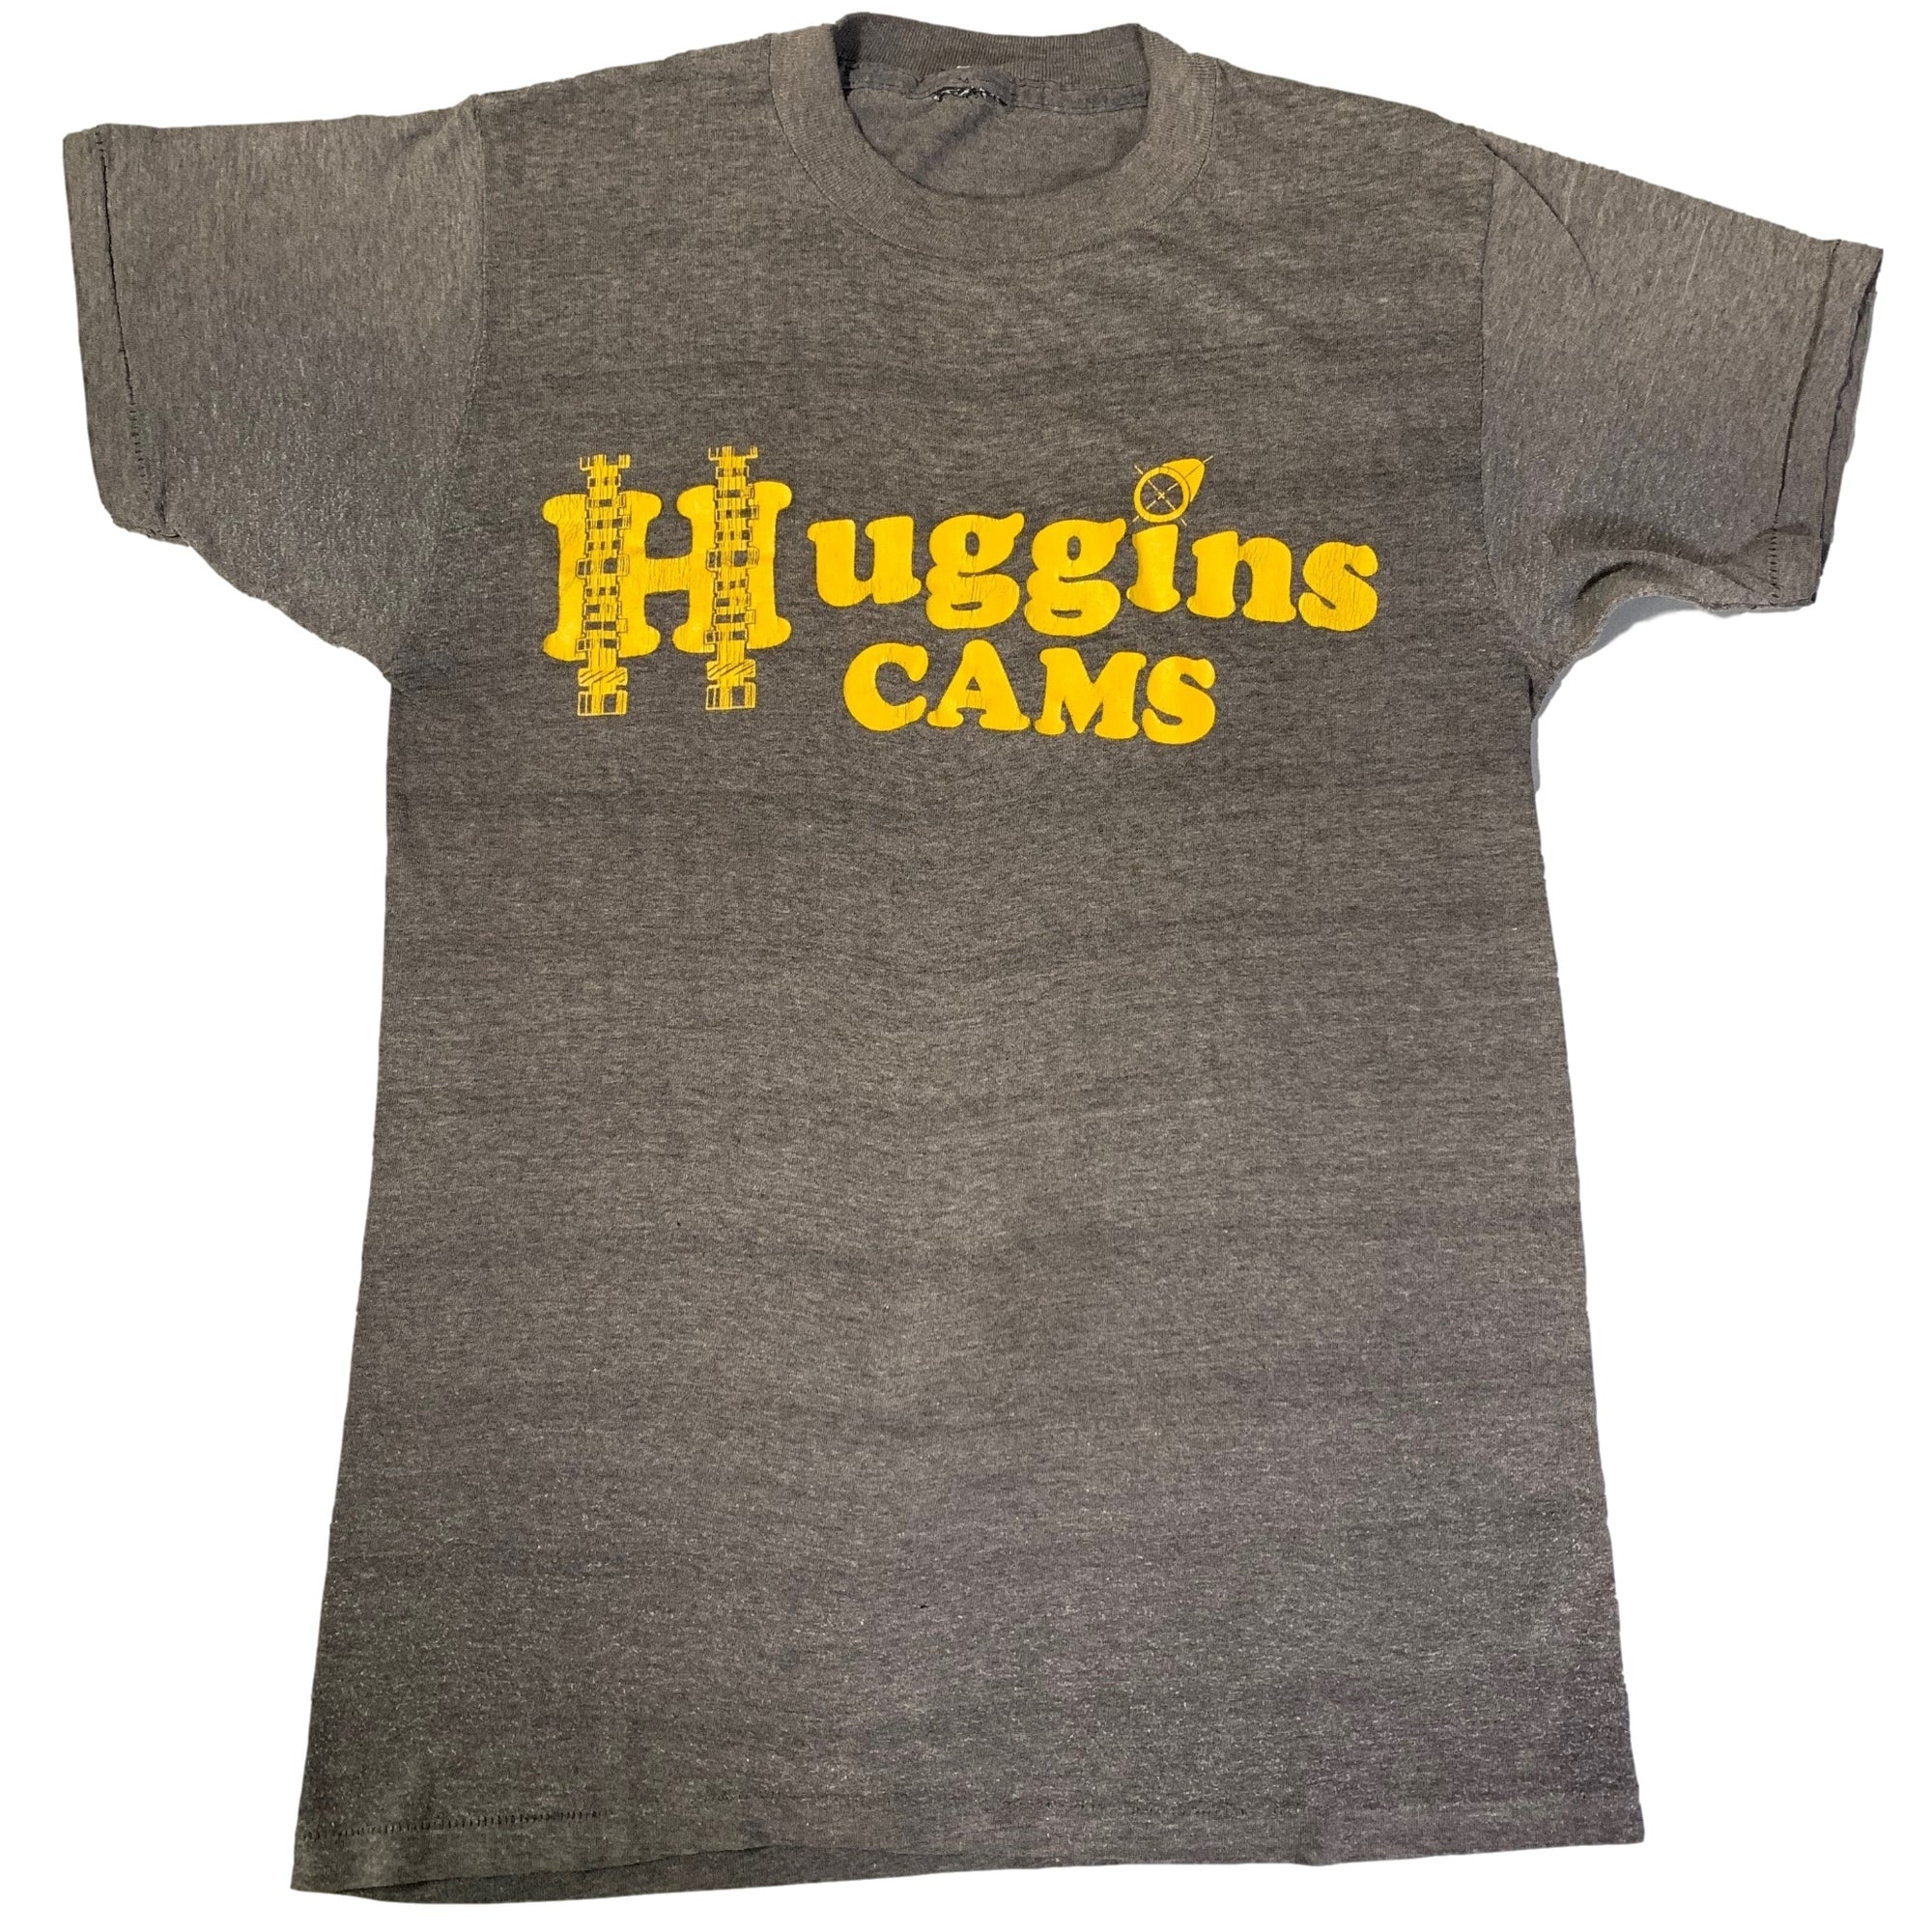 Vintage Huggins Cams "Camshafts" T-Shirt - jointcustodydc